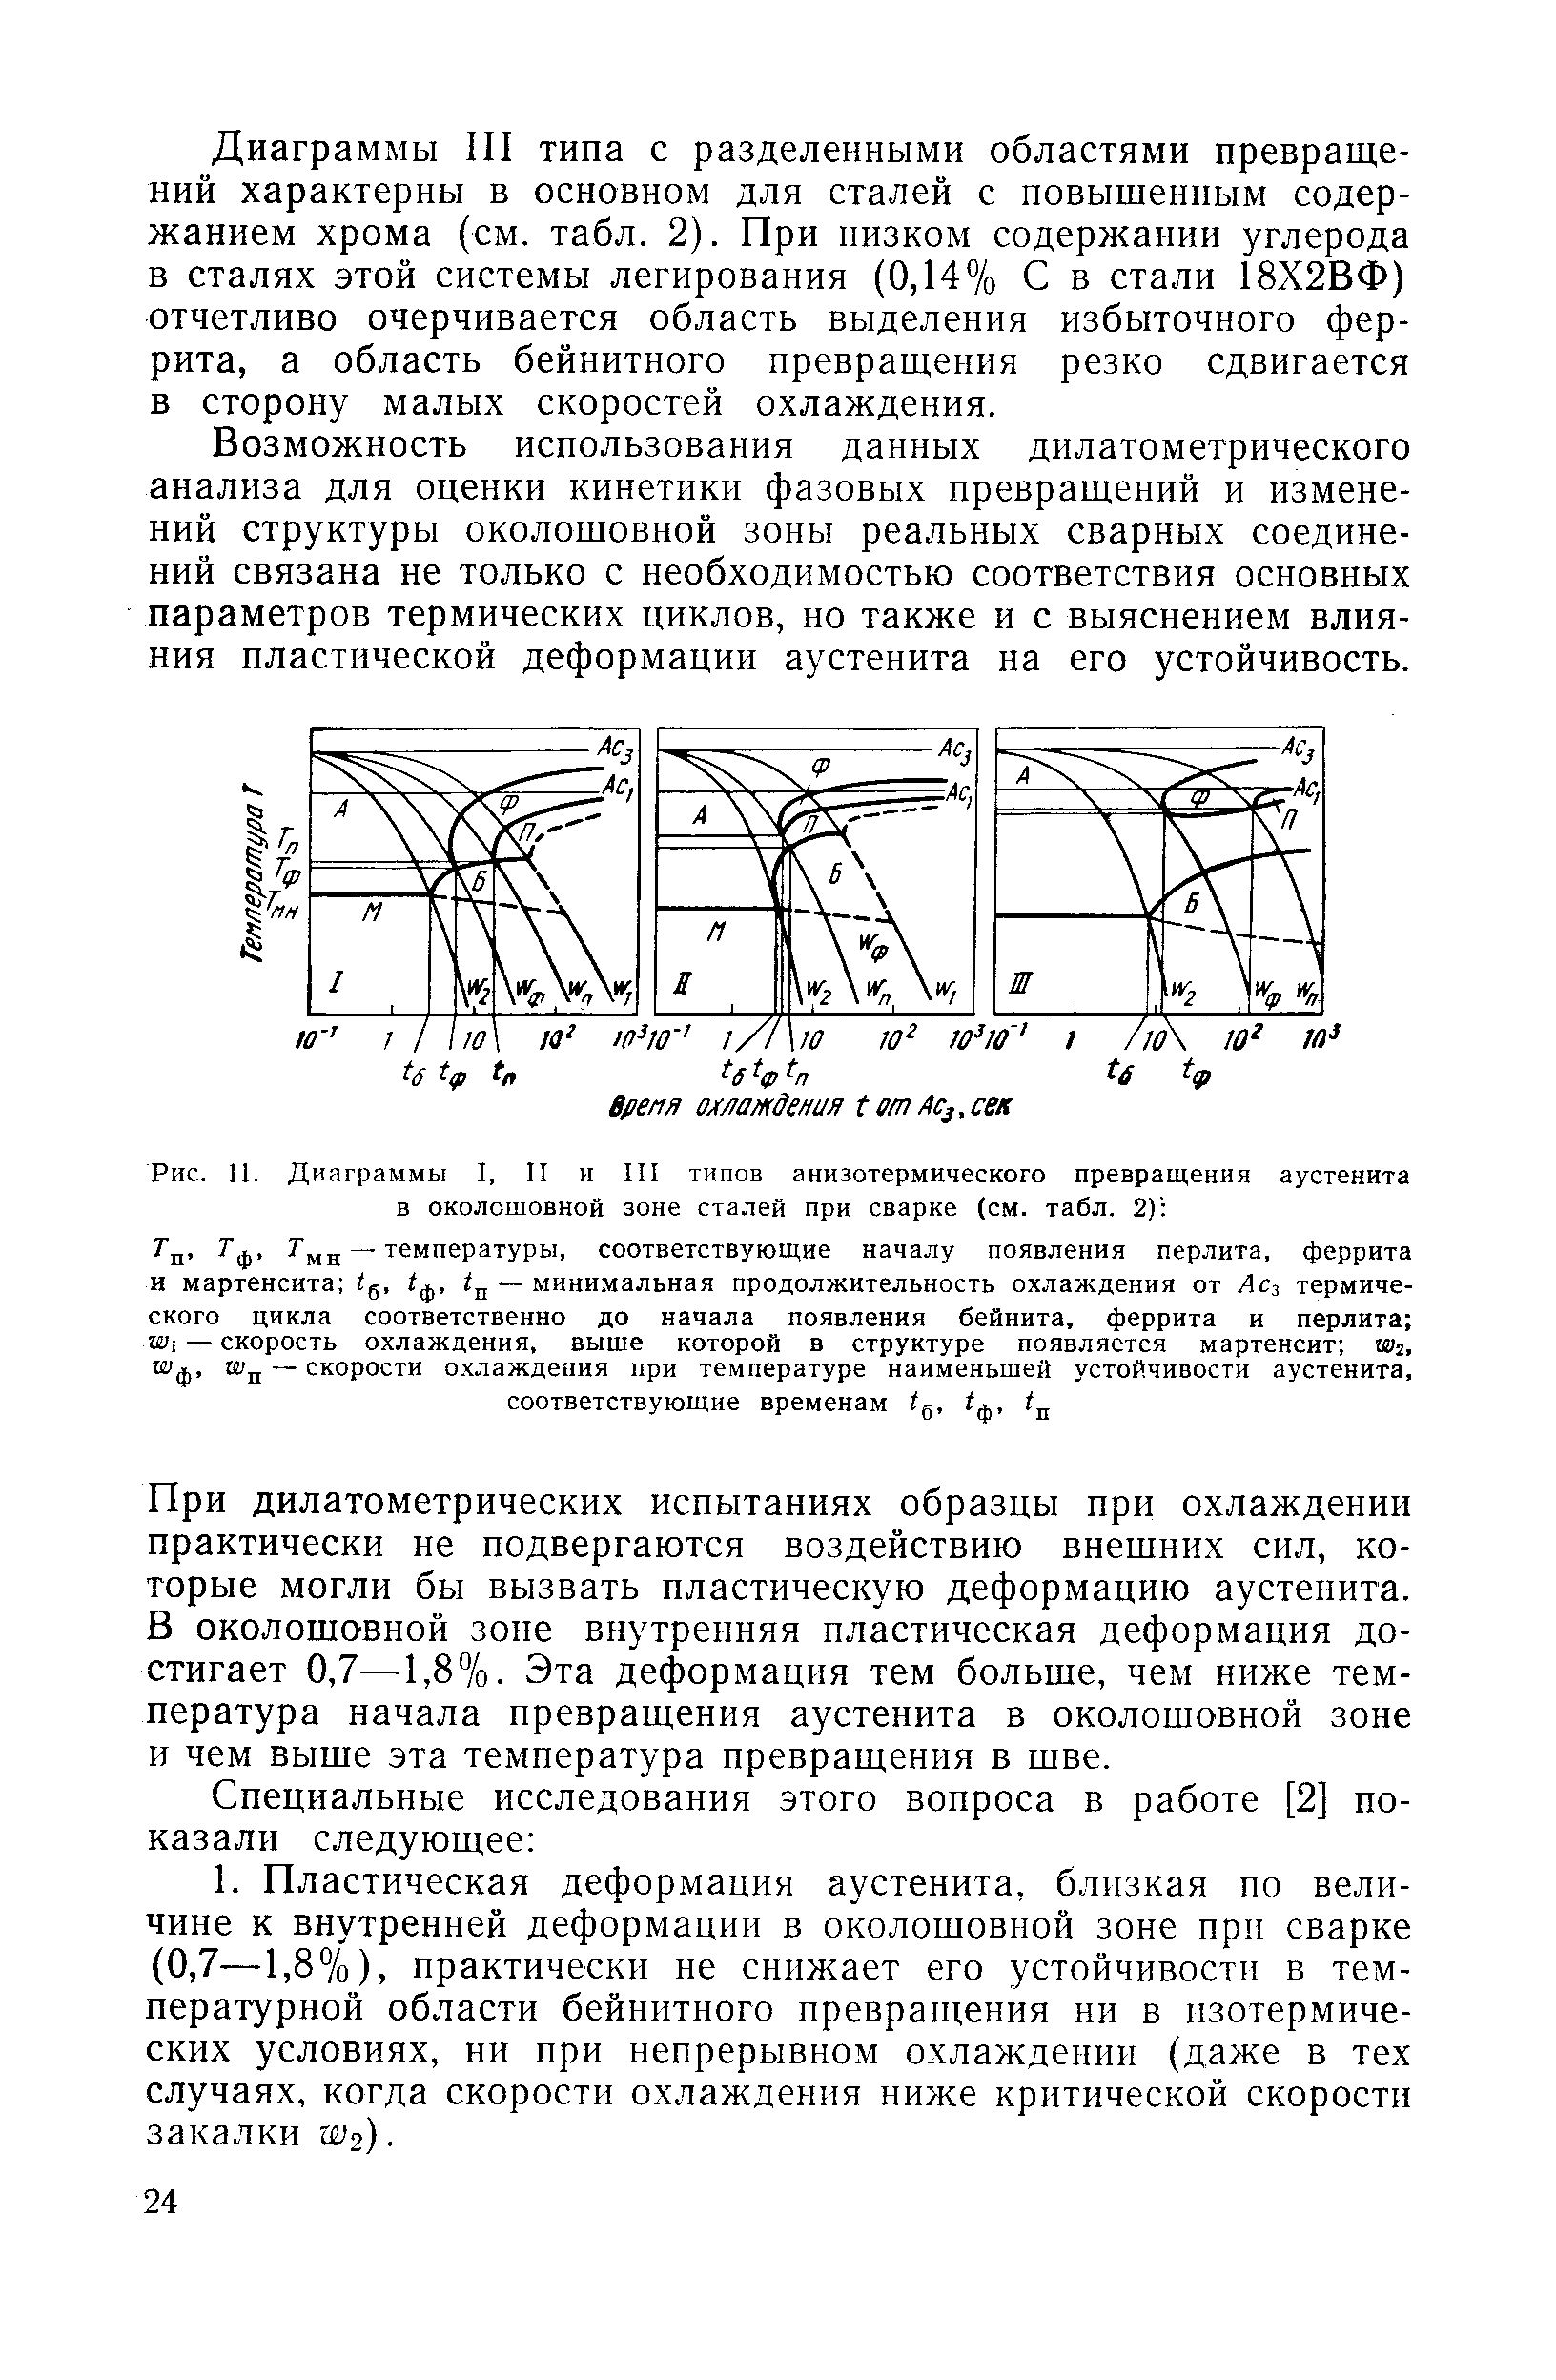 Рис. 11. Диаграммы I, II и III типов анизотермического превращения аустенита в <a href="/info/7202">околошовной зоне</a> сталей при сварке (см. табл. 2) 
